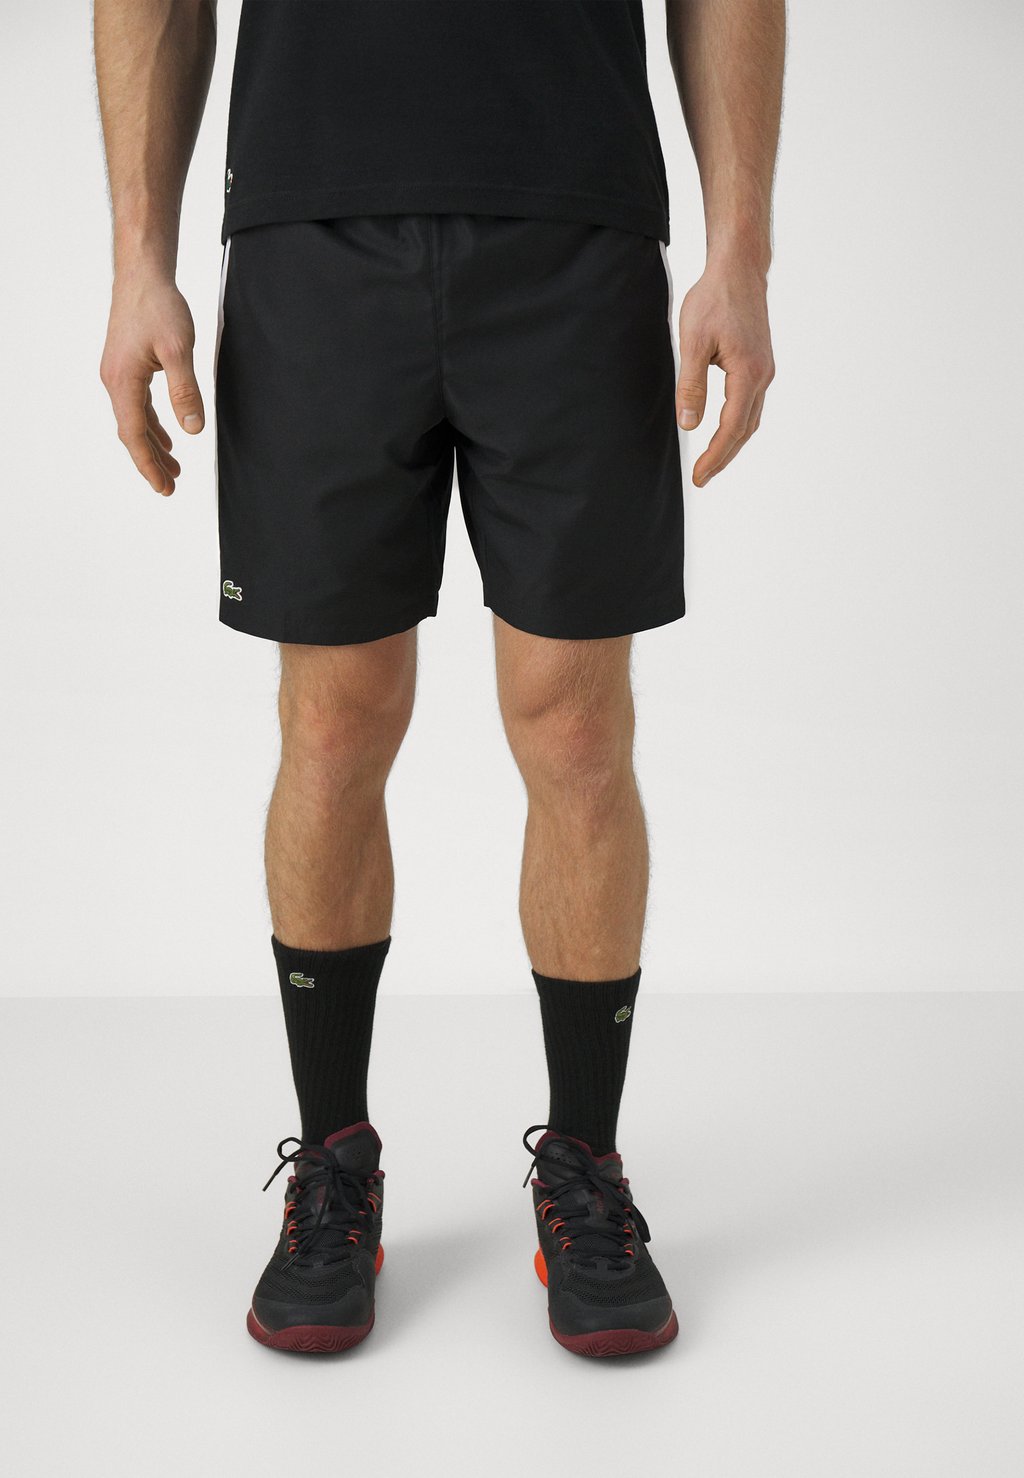 Спортивные шорты Sports Shorts Lacoste, цвет noir/blanc спортивные шорты tulum с цветными блоками blanc noir цвет gold finch